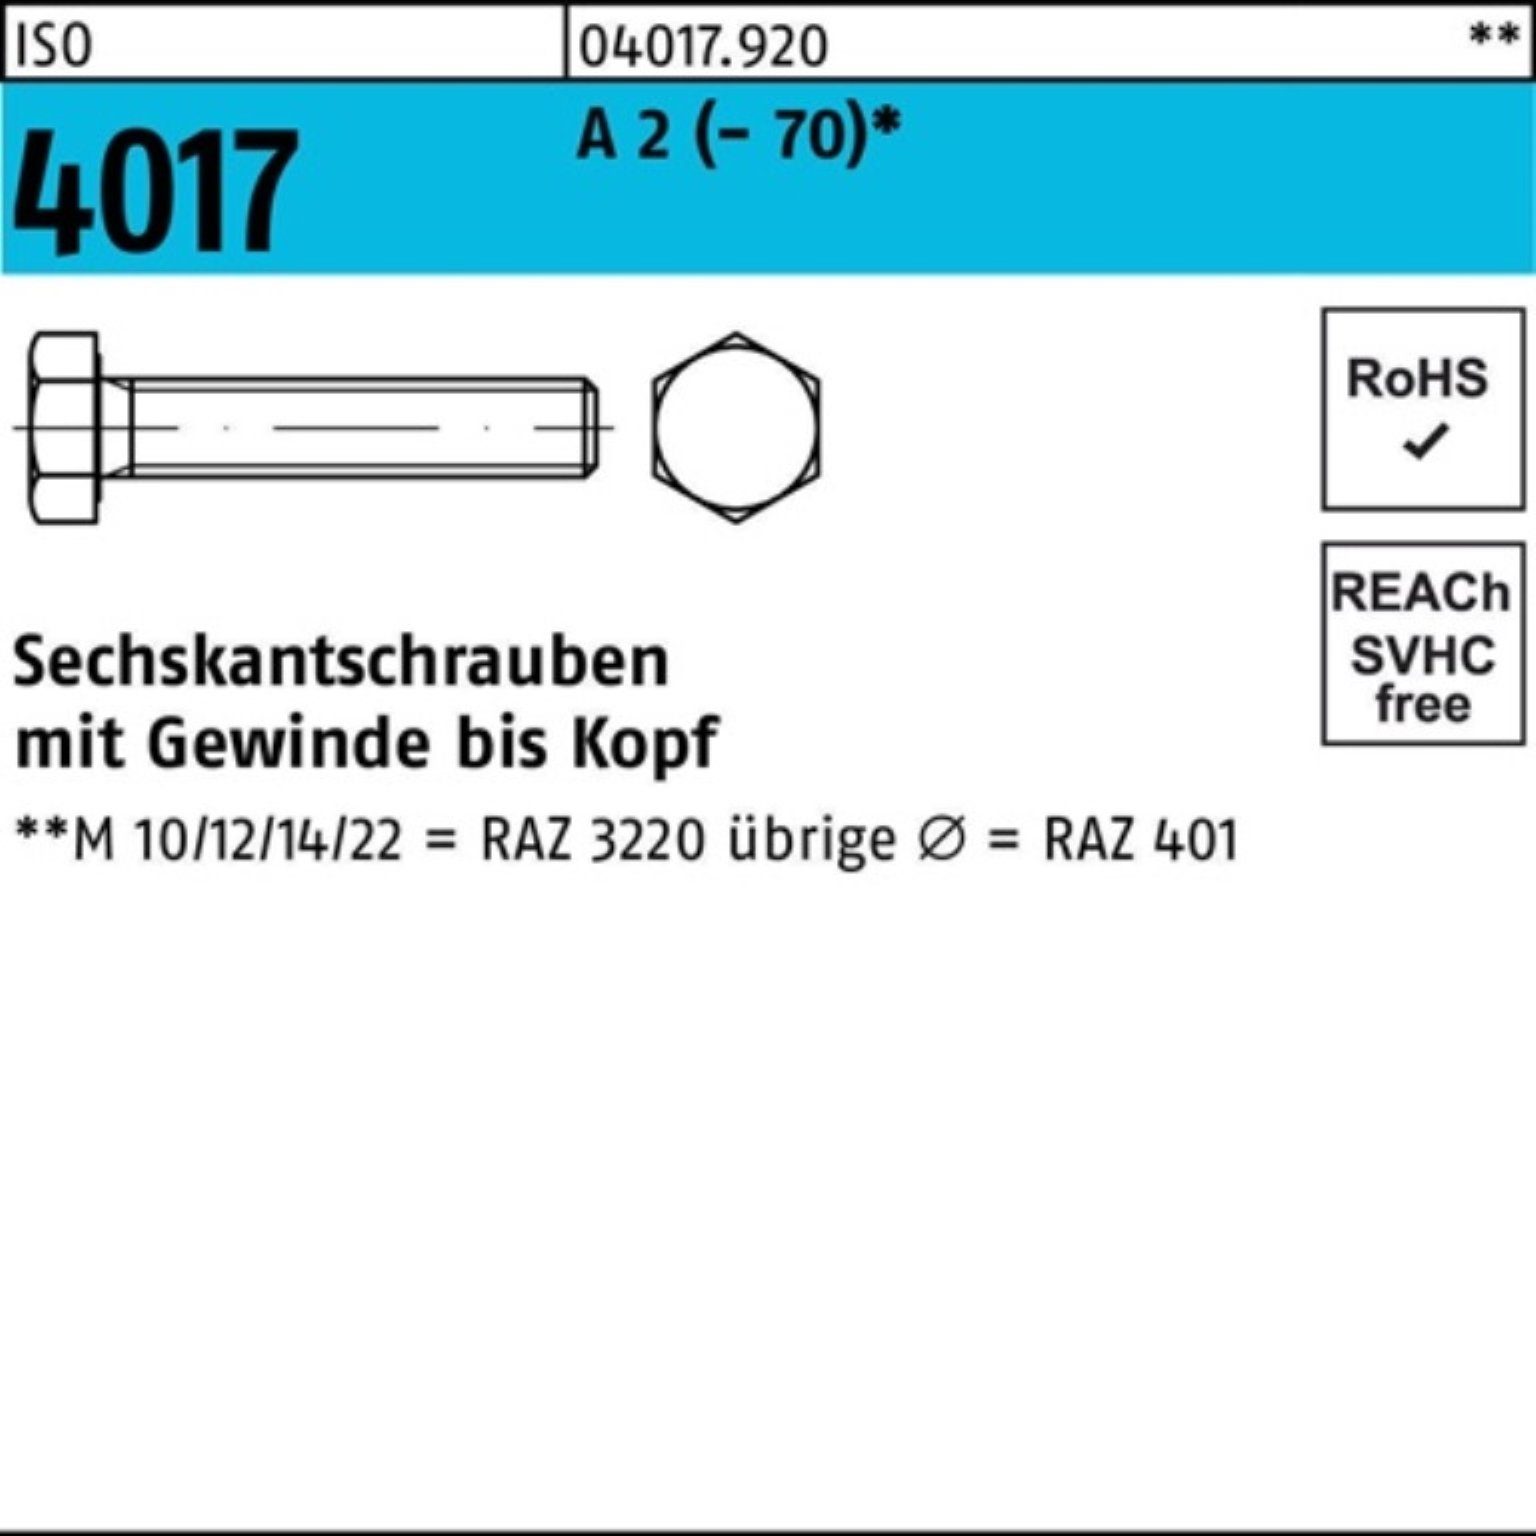 Bufab Sechskantschraube 100er Pack Sechskantschraube ISO 4017 VG M20x 85 A 2 (70) 25 Stück